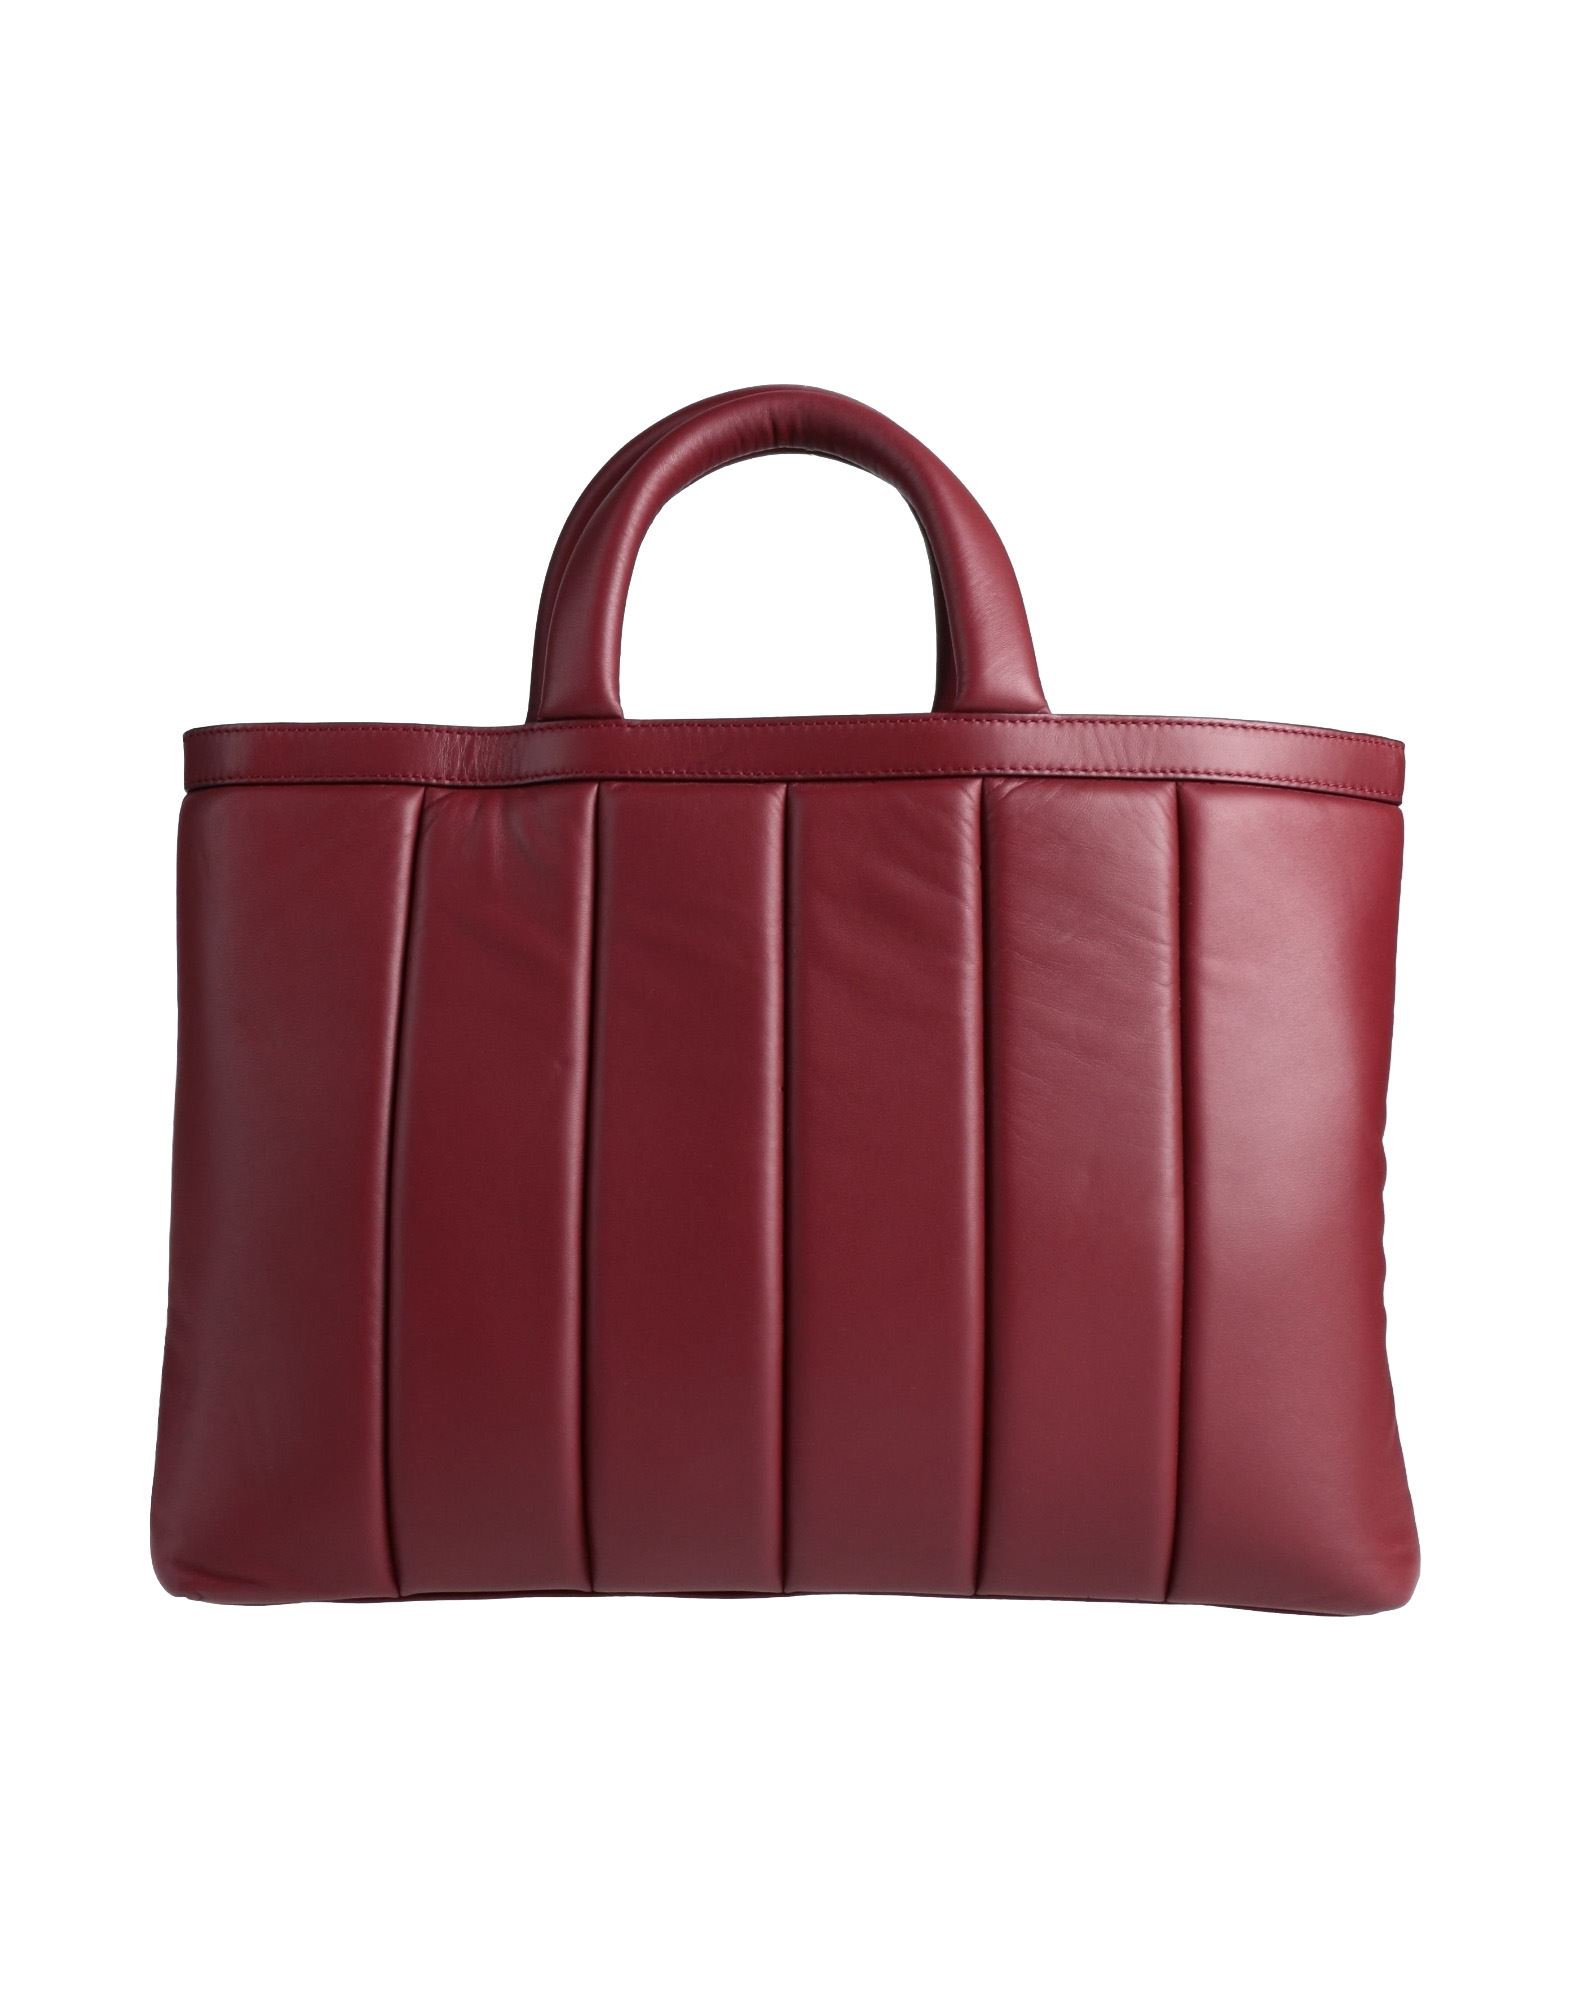 Dunhill Handbags In Red